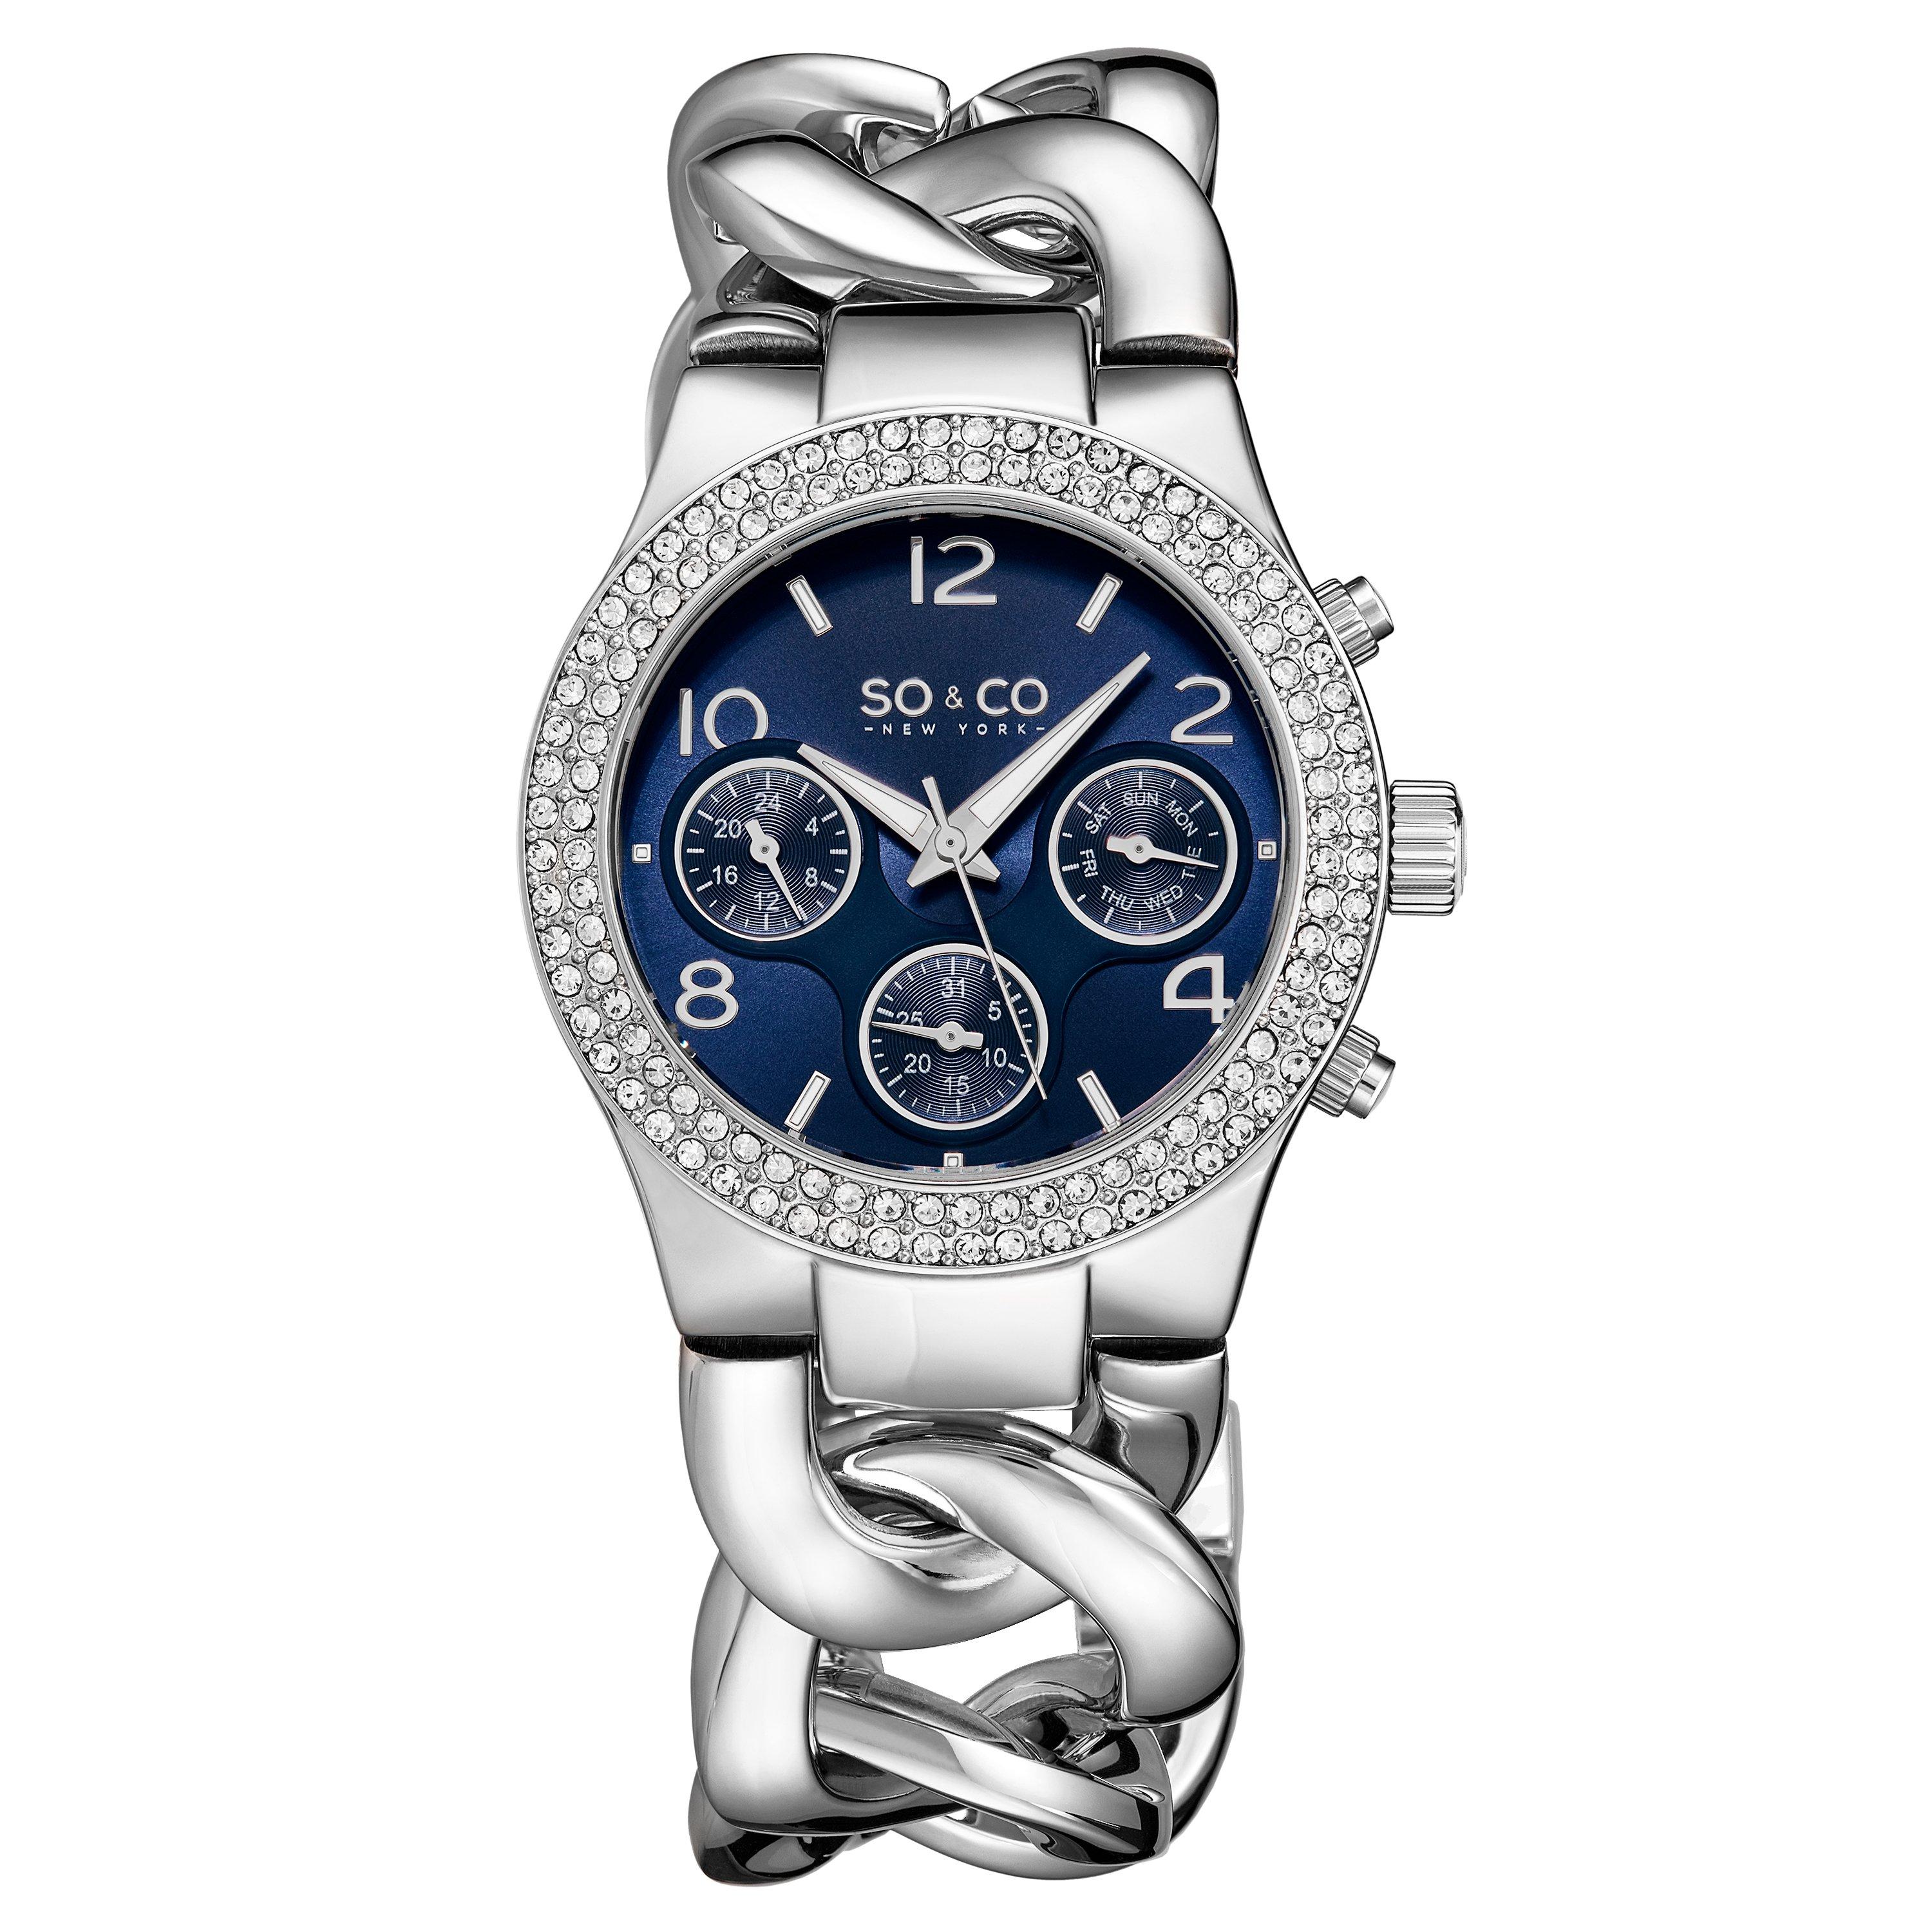 Часы Chelsea 5013A, 38 мм, с кристаллами и шипованной цепочкой, с матовым циферблатом SO&CO, синий новый стиль винтажные ностальгические кварцевые карманные часы с цепочкой изысканные часы advance sense сувенирные подарочные наборы для парн